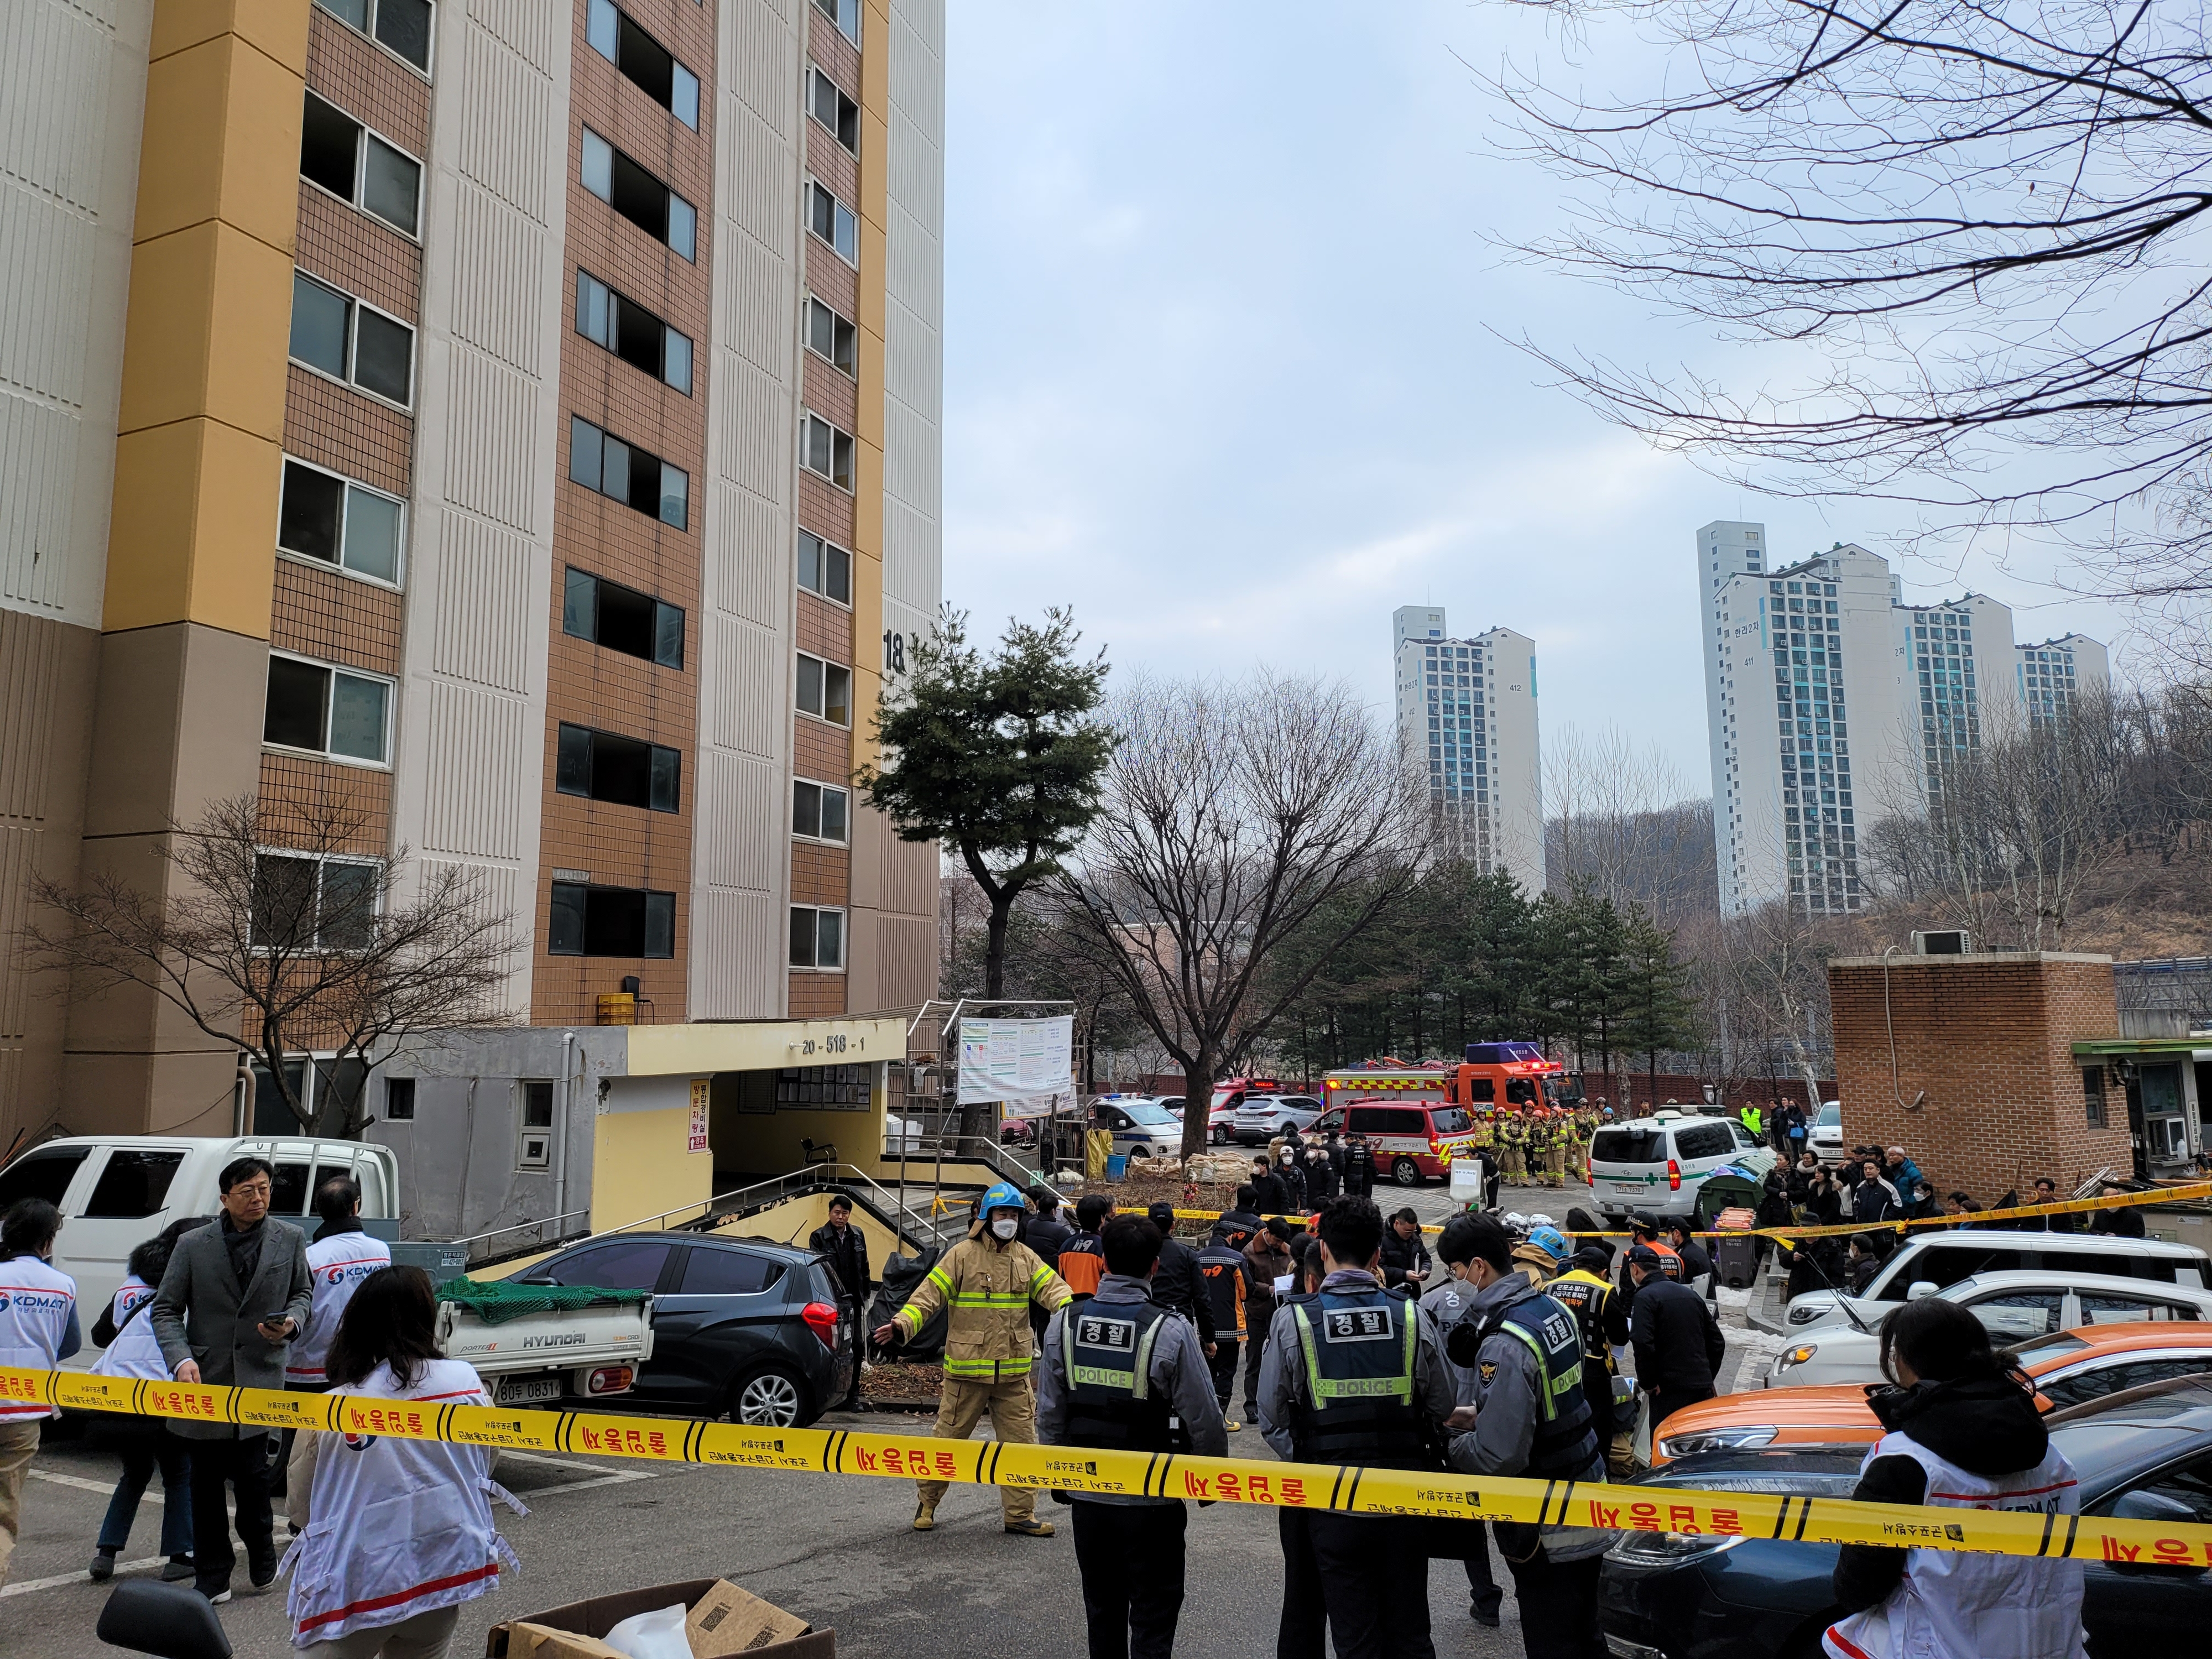 2일 오전 7시 15분쯤 경기 군포의 한 아파트 9층에서 불이나 1명이 숨지고 13명이 부상을 입었다. 명종원 기자